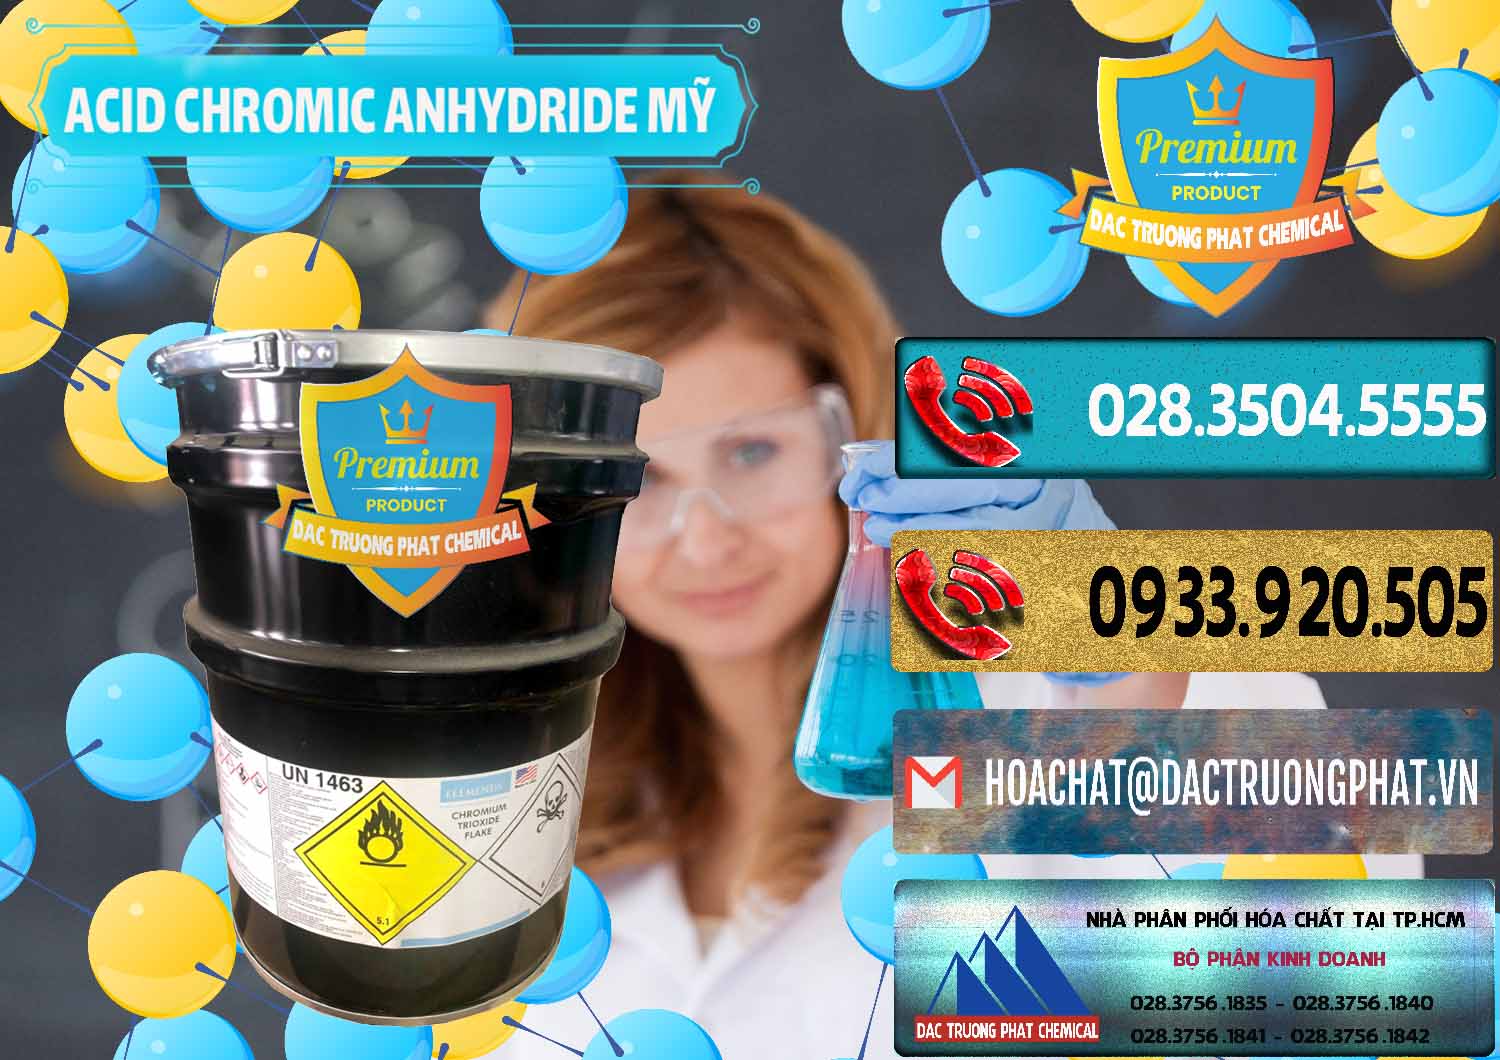 Cty chuyên nhập khẩu và bán Acid Chromic Anhydride - Cromic CRO3 USA Mỹ - 0364 - Nơi nhập khẩu _ phân phối hóa chất tại TP.HCM - hoachatdetnhuom.com